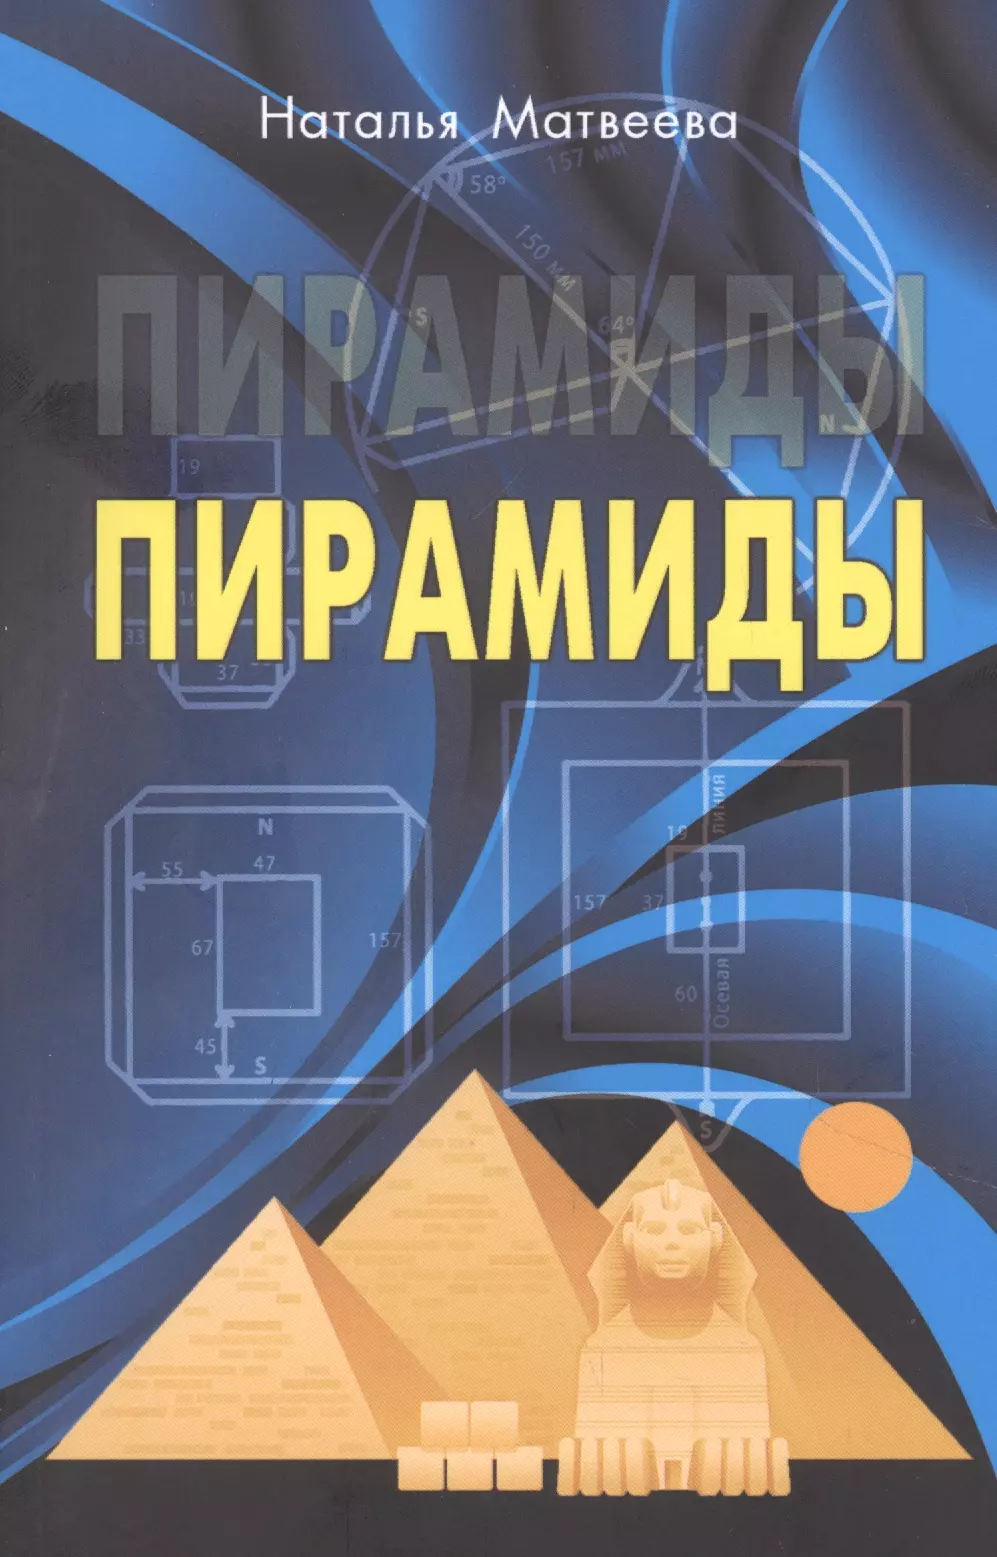 Матвеева Нина Александровна - Пирамиды